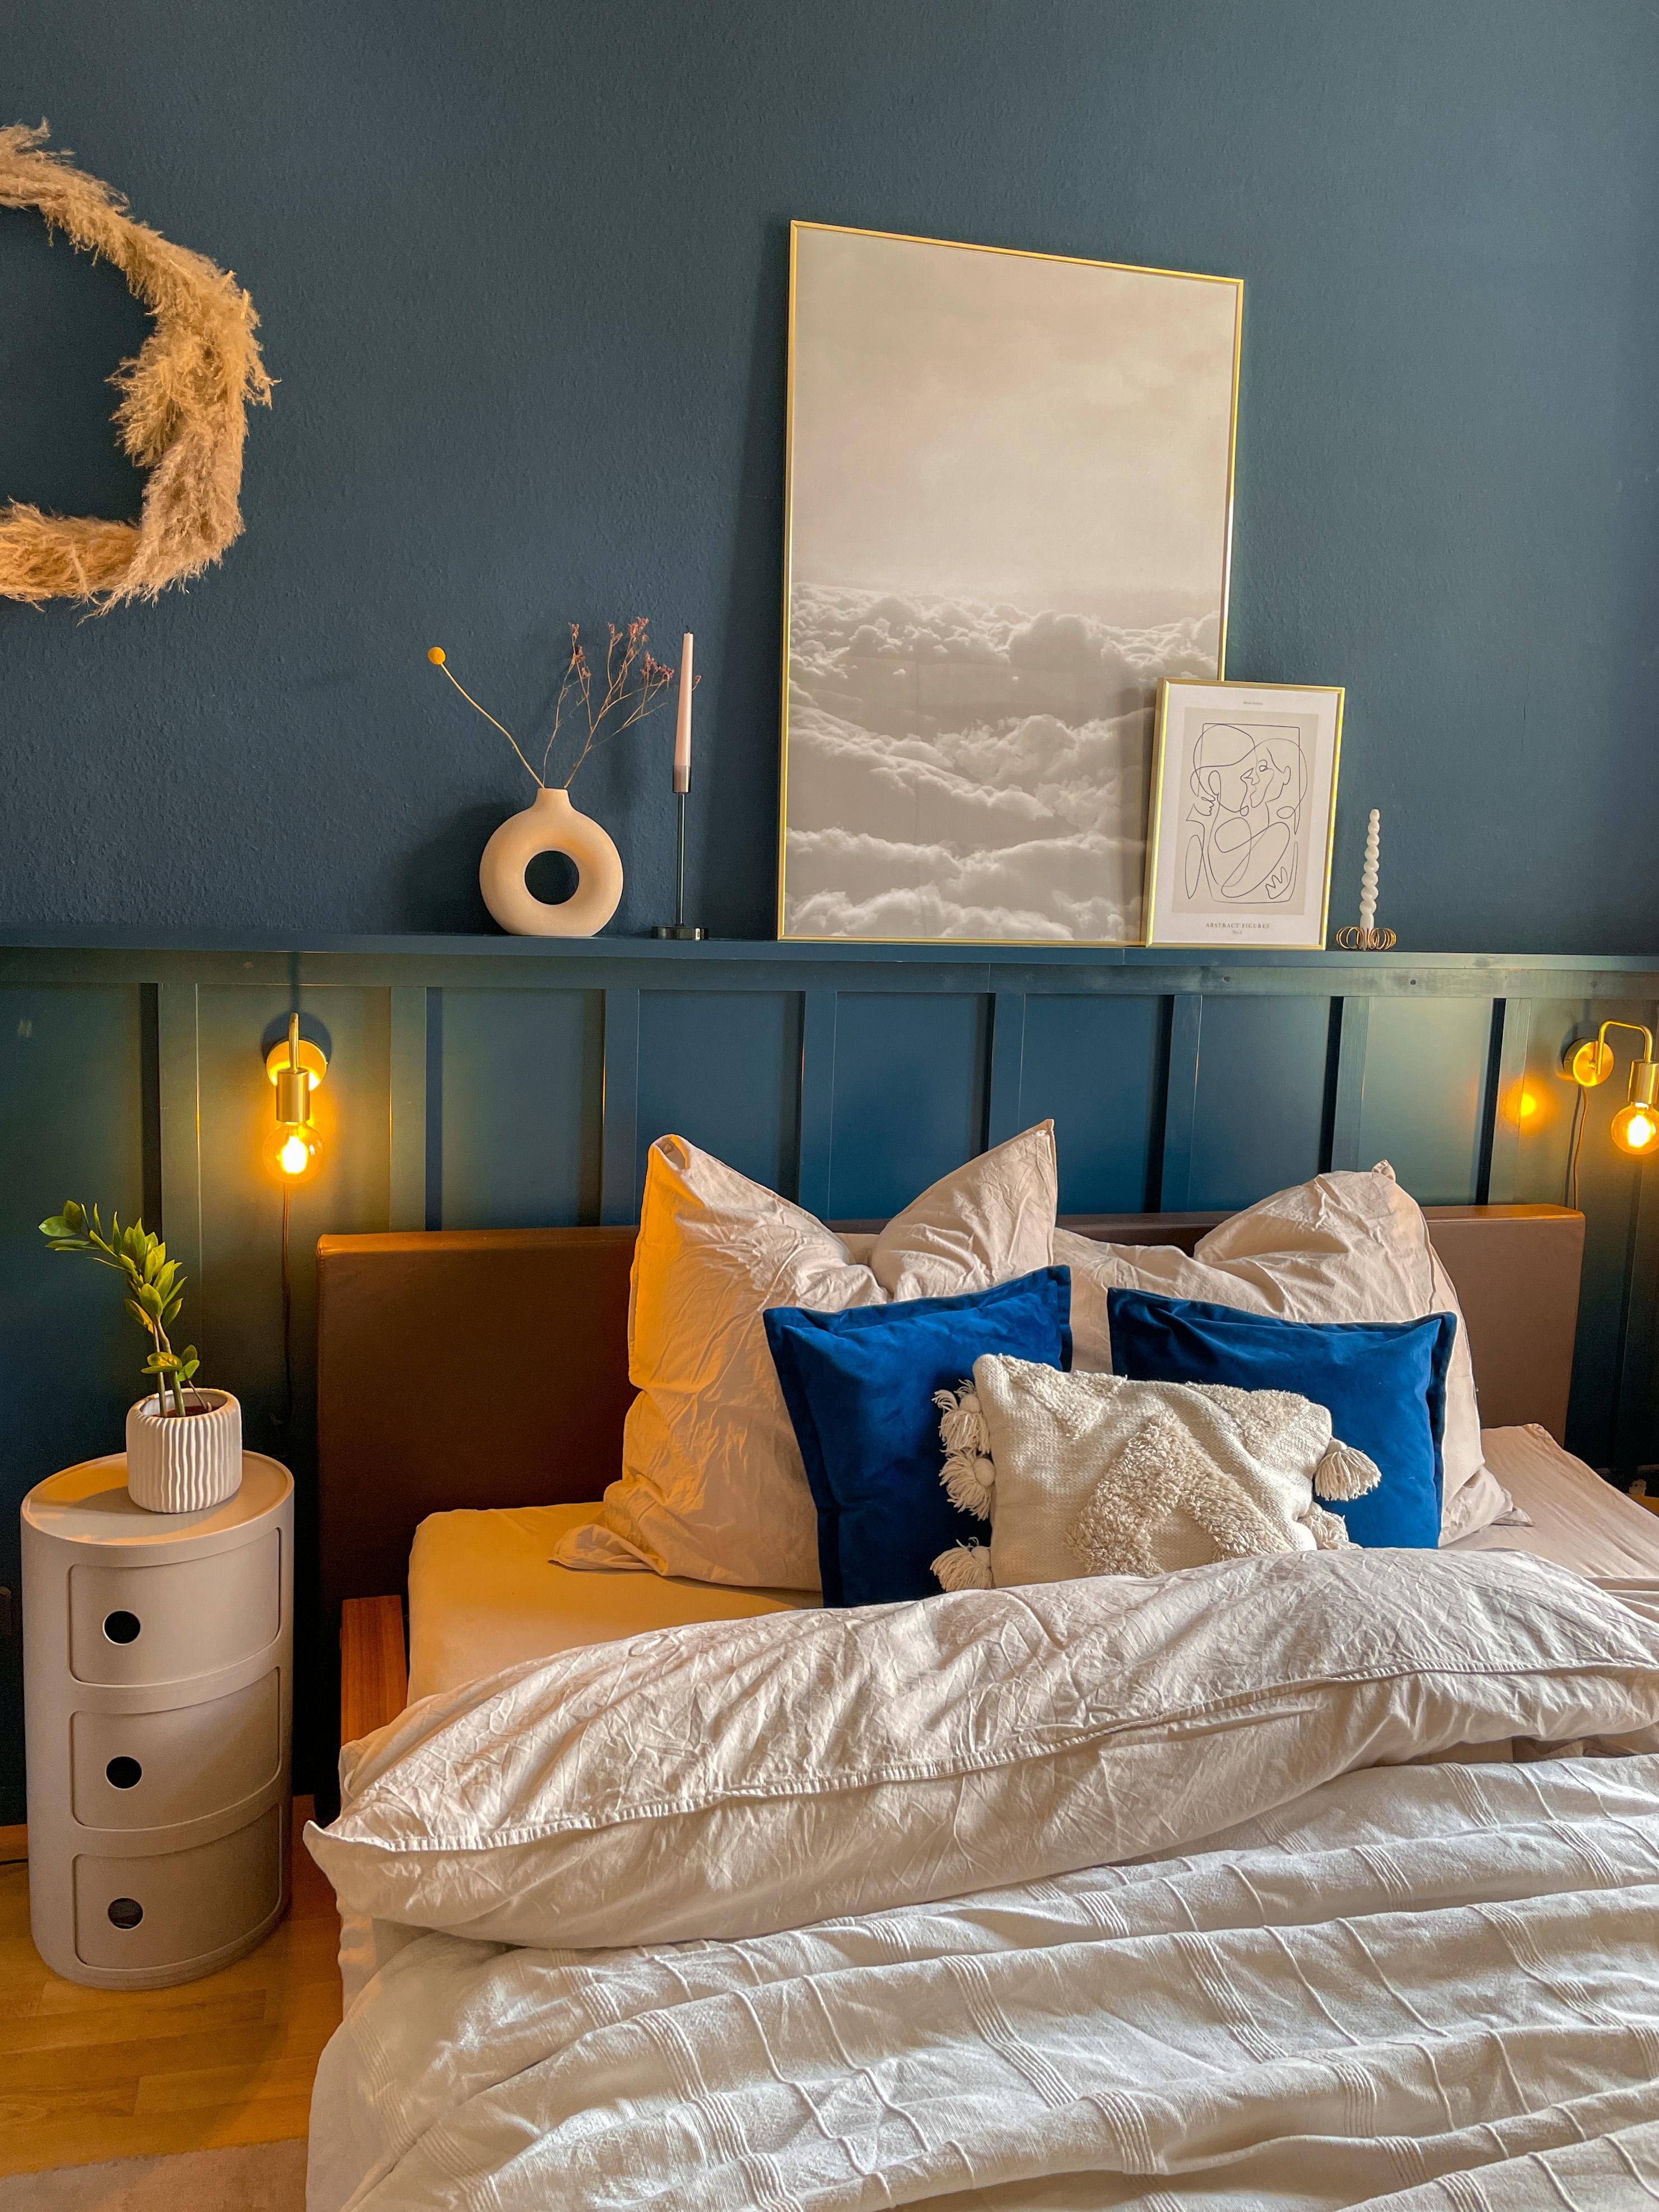 Schlafzimmer 🧡
#blueberry #panelling #wandverkleidung #diy #darkblue #cozy #kartell